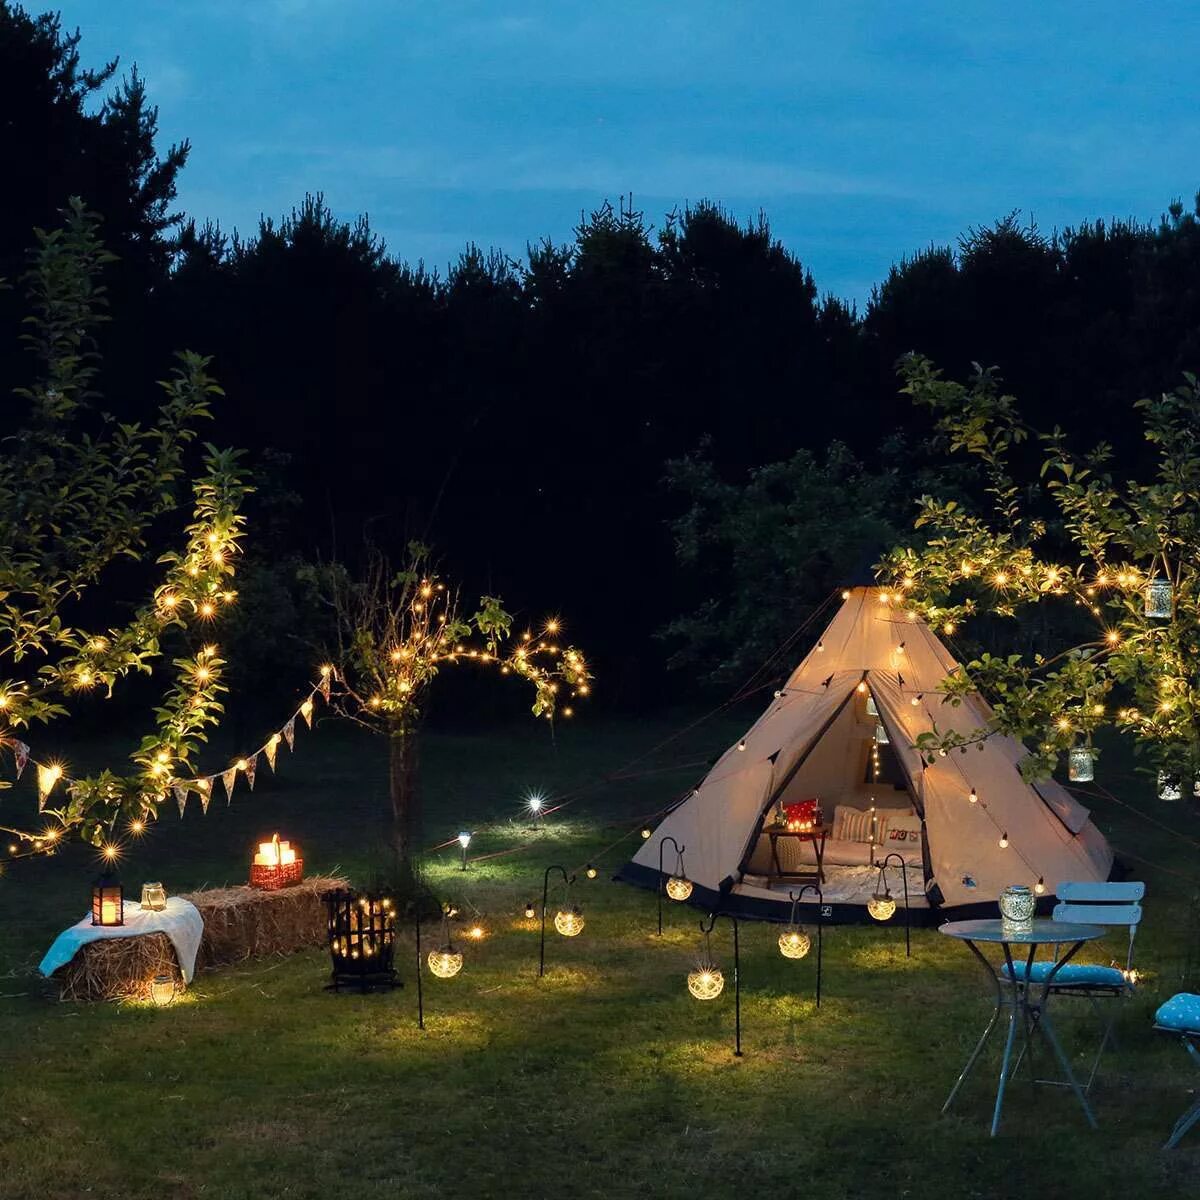 Camping lighting. Tent Camping Lights. Solar Camping Light xc50. Уличное освещение кемпинга. Свет для кемпинга.